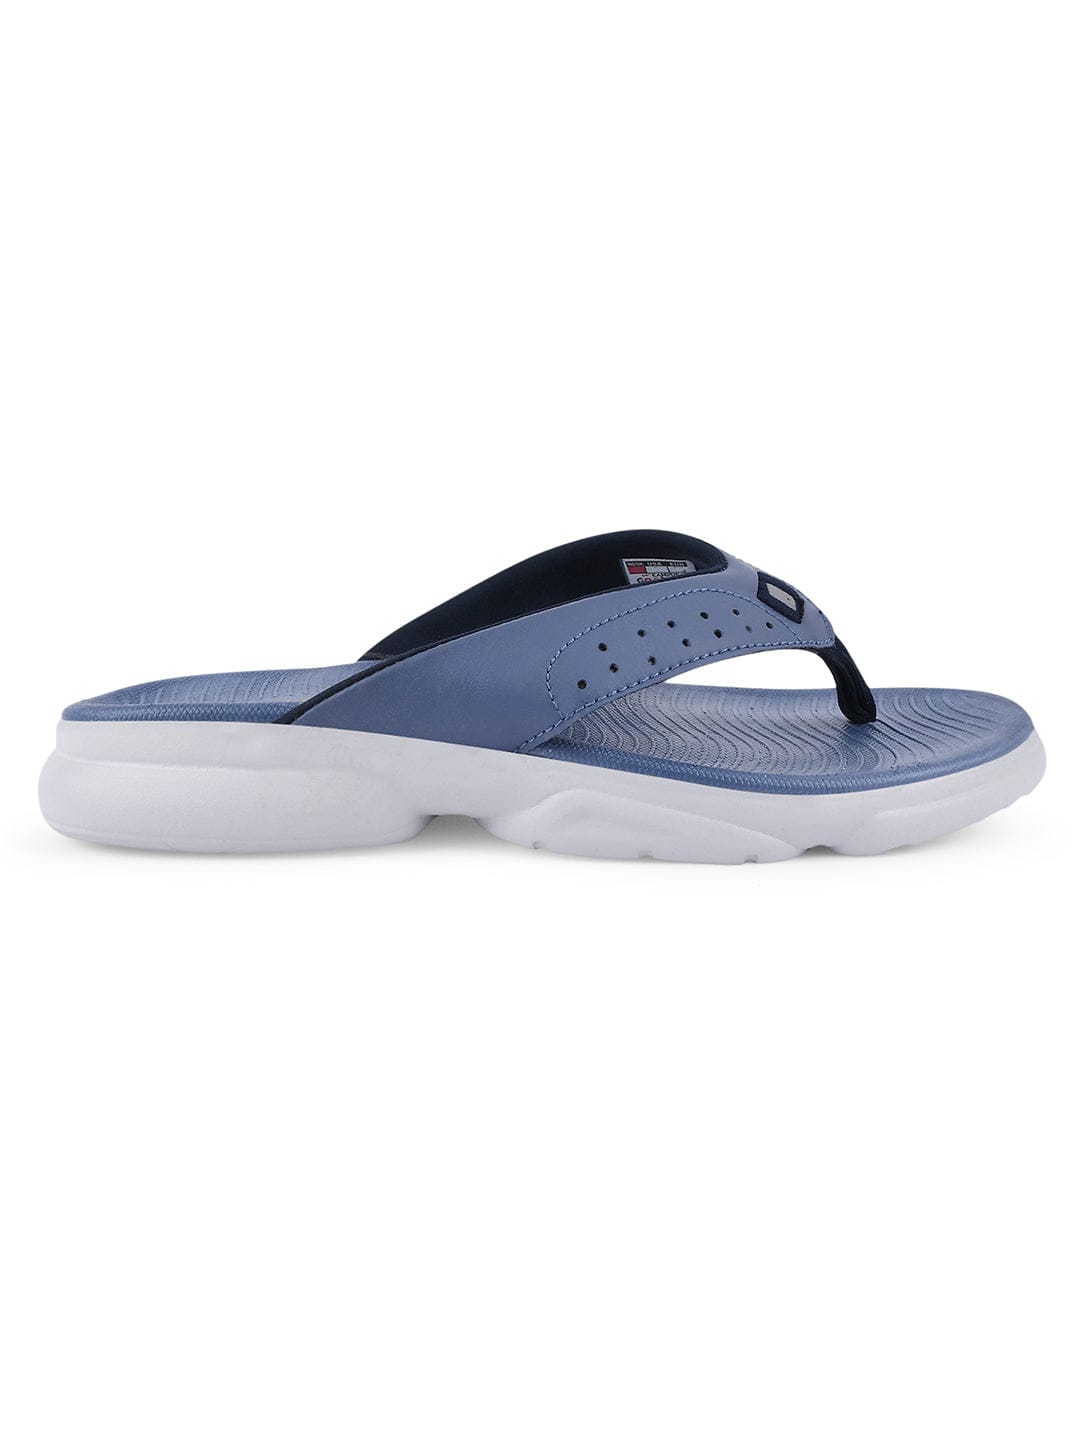 Buy SL-409L Blue Women Flip Flops online | Campus Shoes